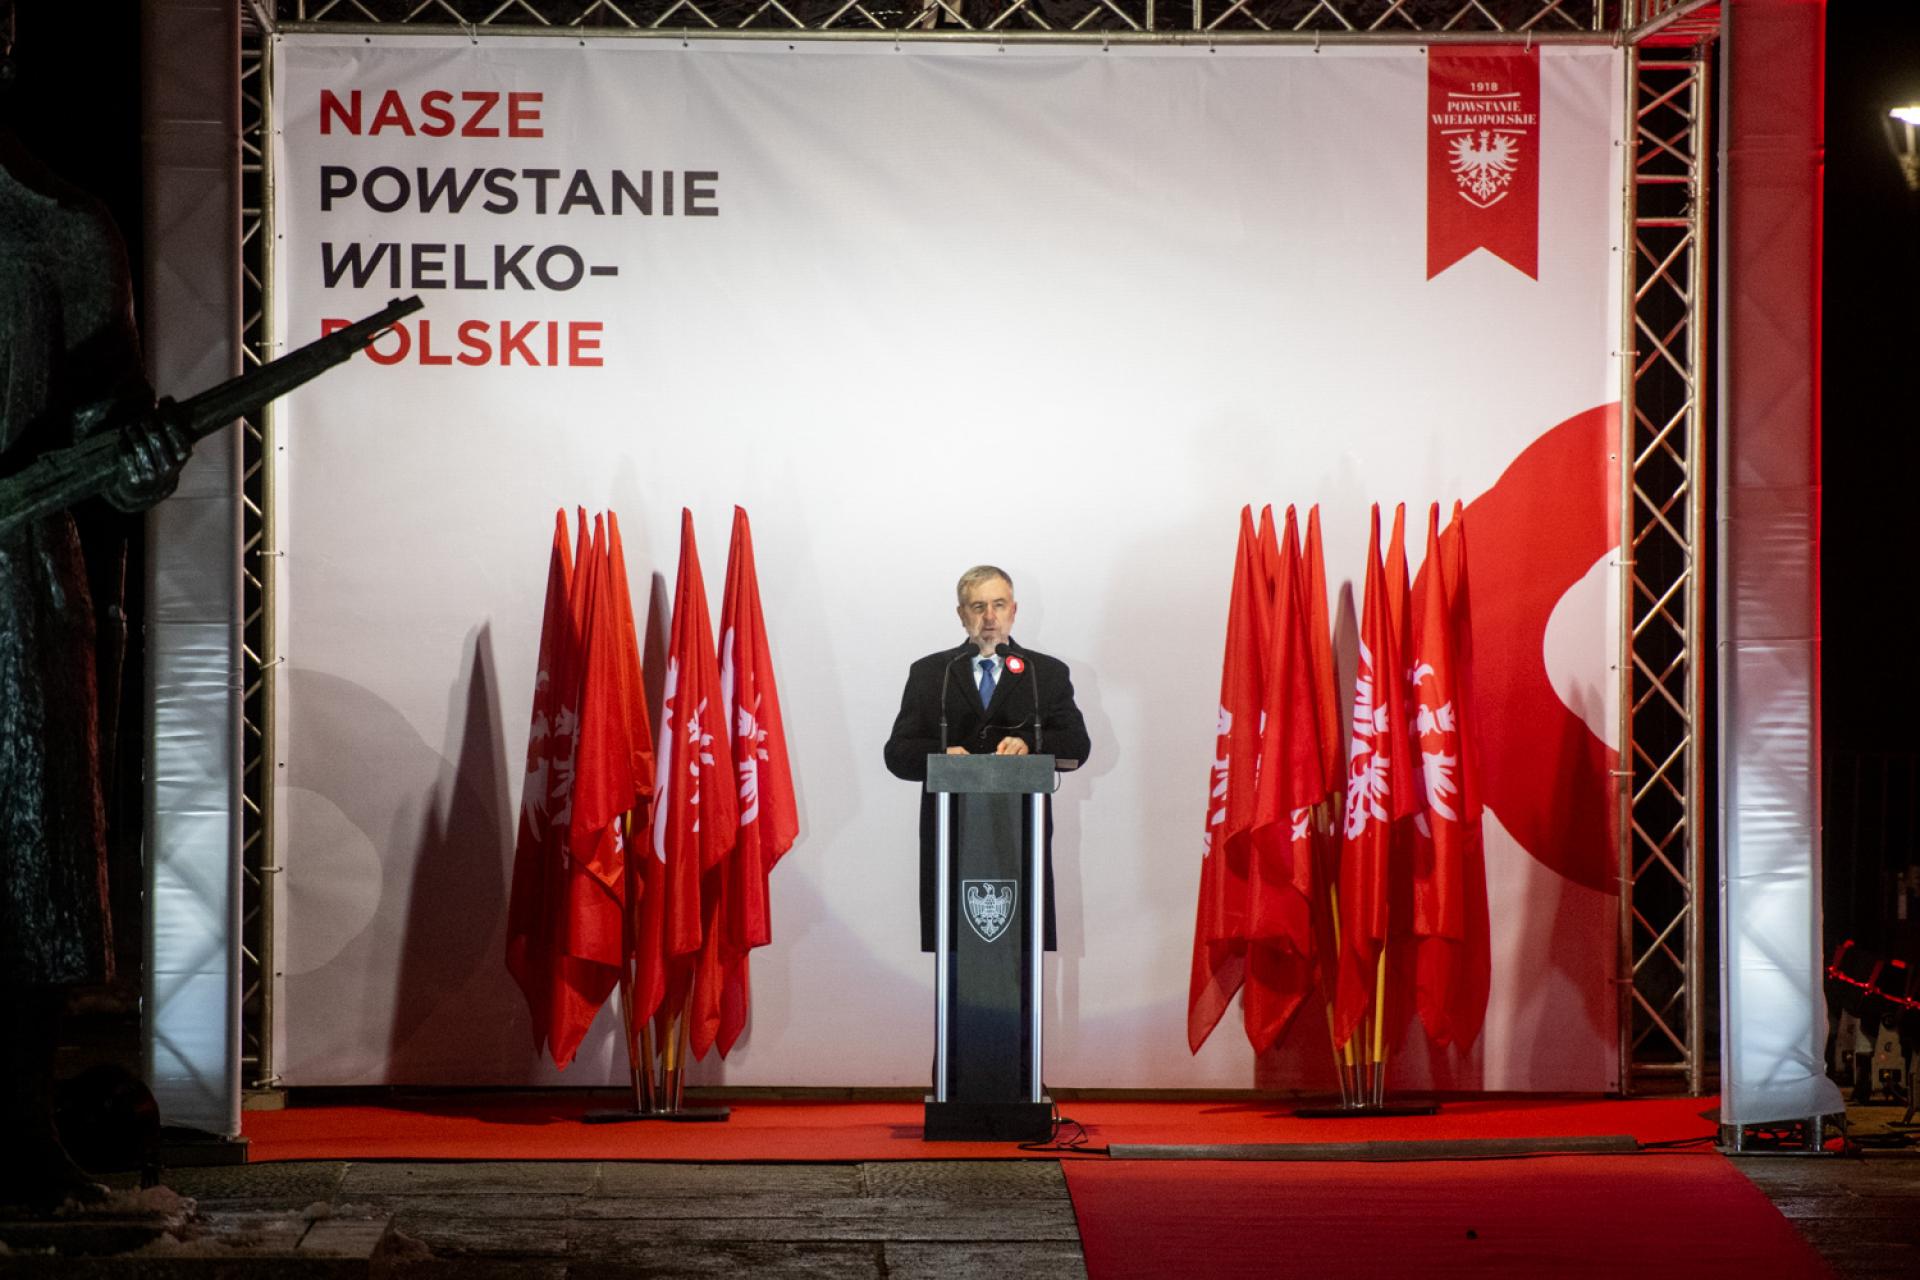 Marszałek Marek Woźniak: Tu stajemy razem, w szeregu, aby oddać hołd Wielkopolskim Powstańcom - zobacz więcej